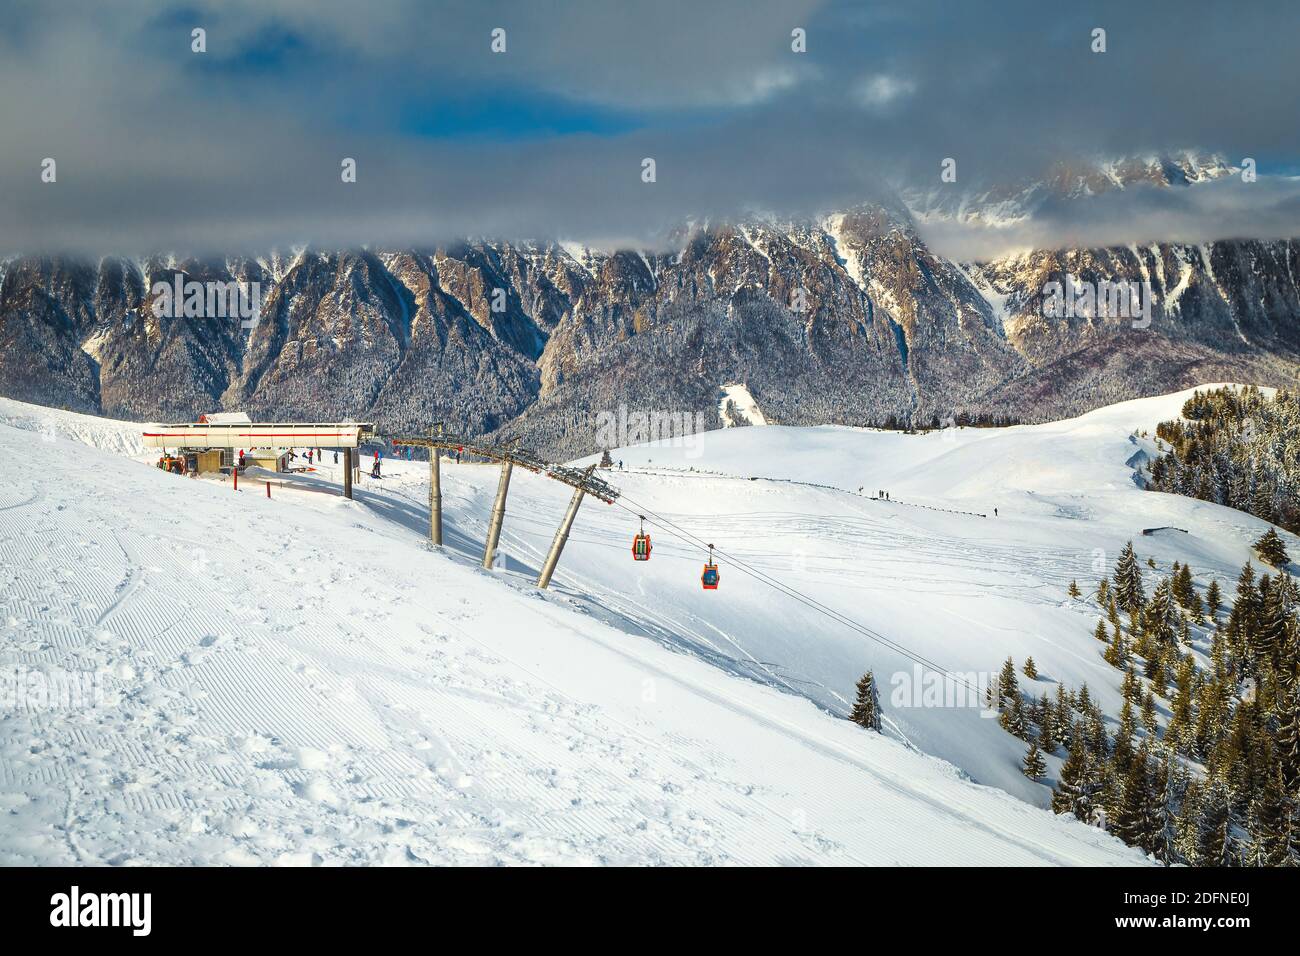 Destination de loisirs d'hiver incroyable, paysages alpins à couper le souffle avec des montagnes, forêt enneigée et station de ski fantastique dans la vallée de Prahova, Azuga, ROM Banque D'Images